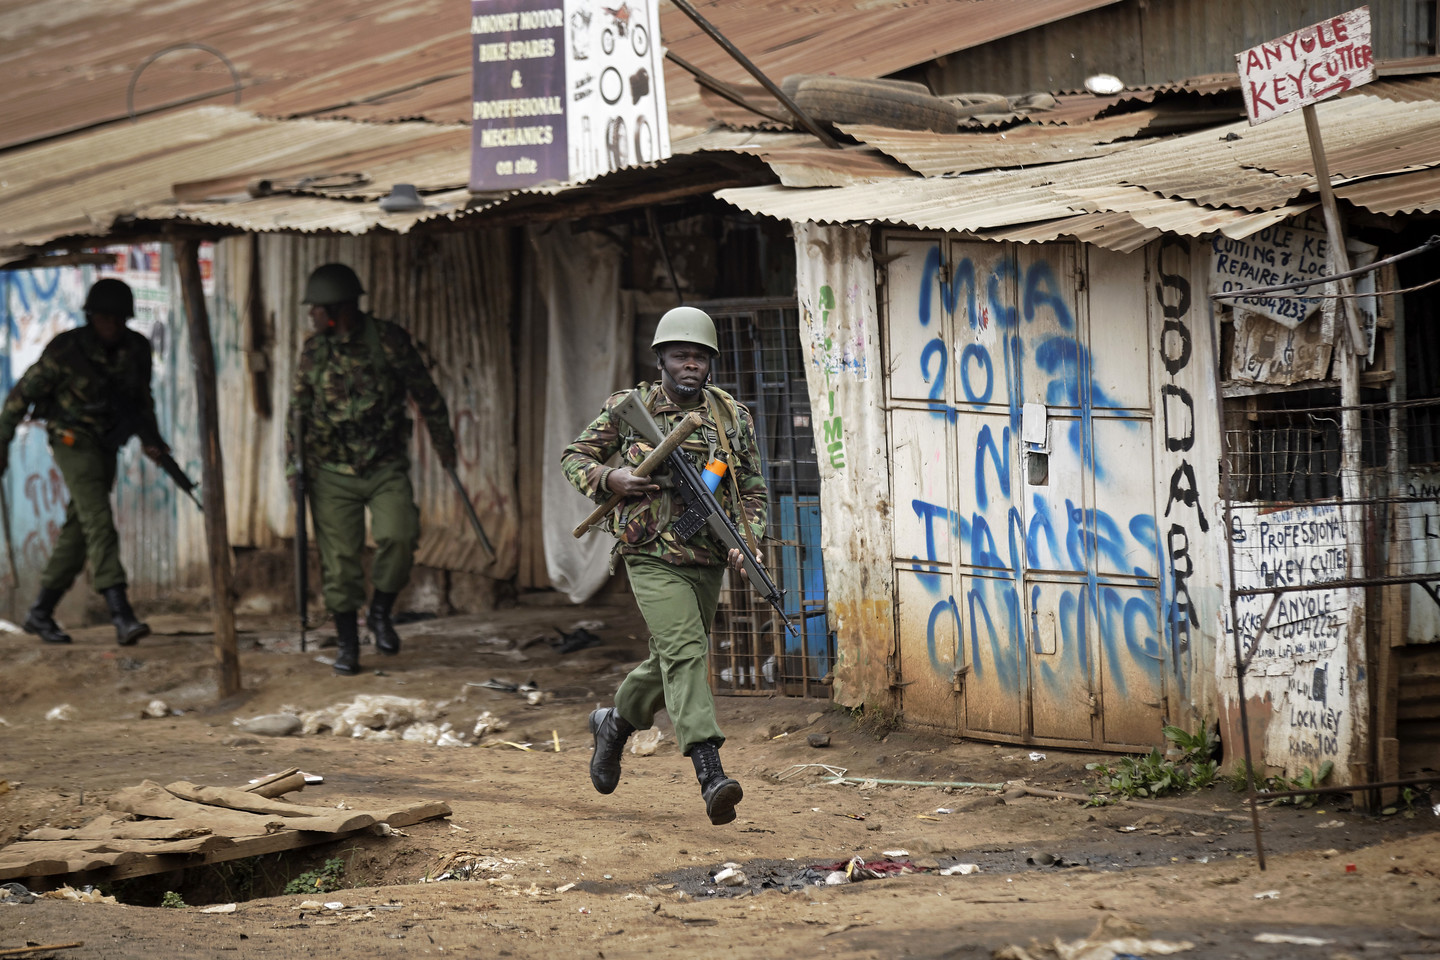  Kenijoje dėl rinkimų prasiveržė smurtas.<br> AP nuotr.